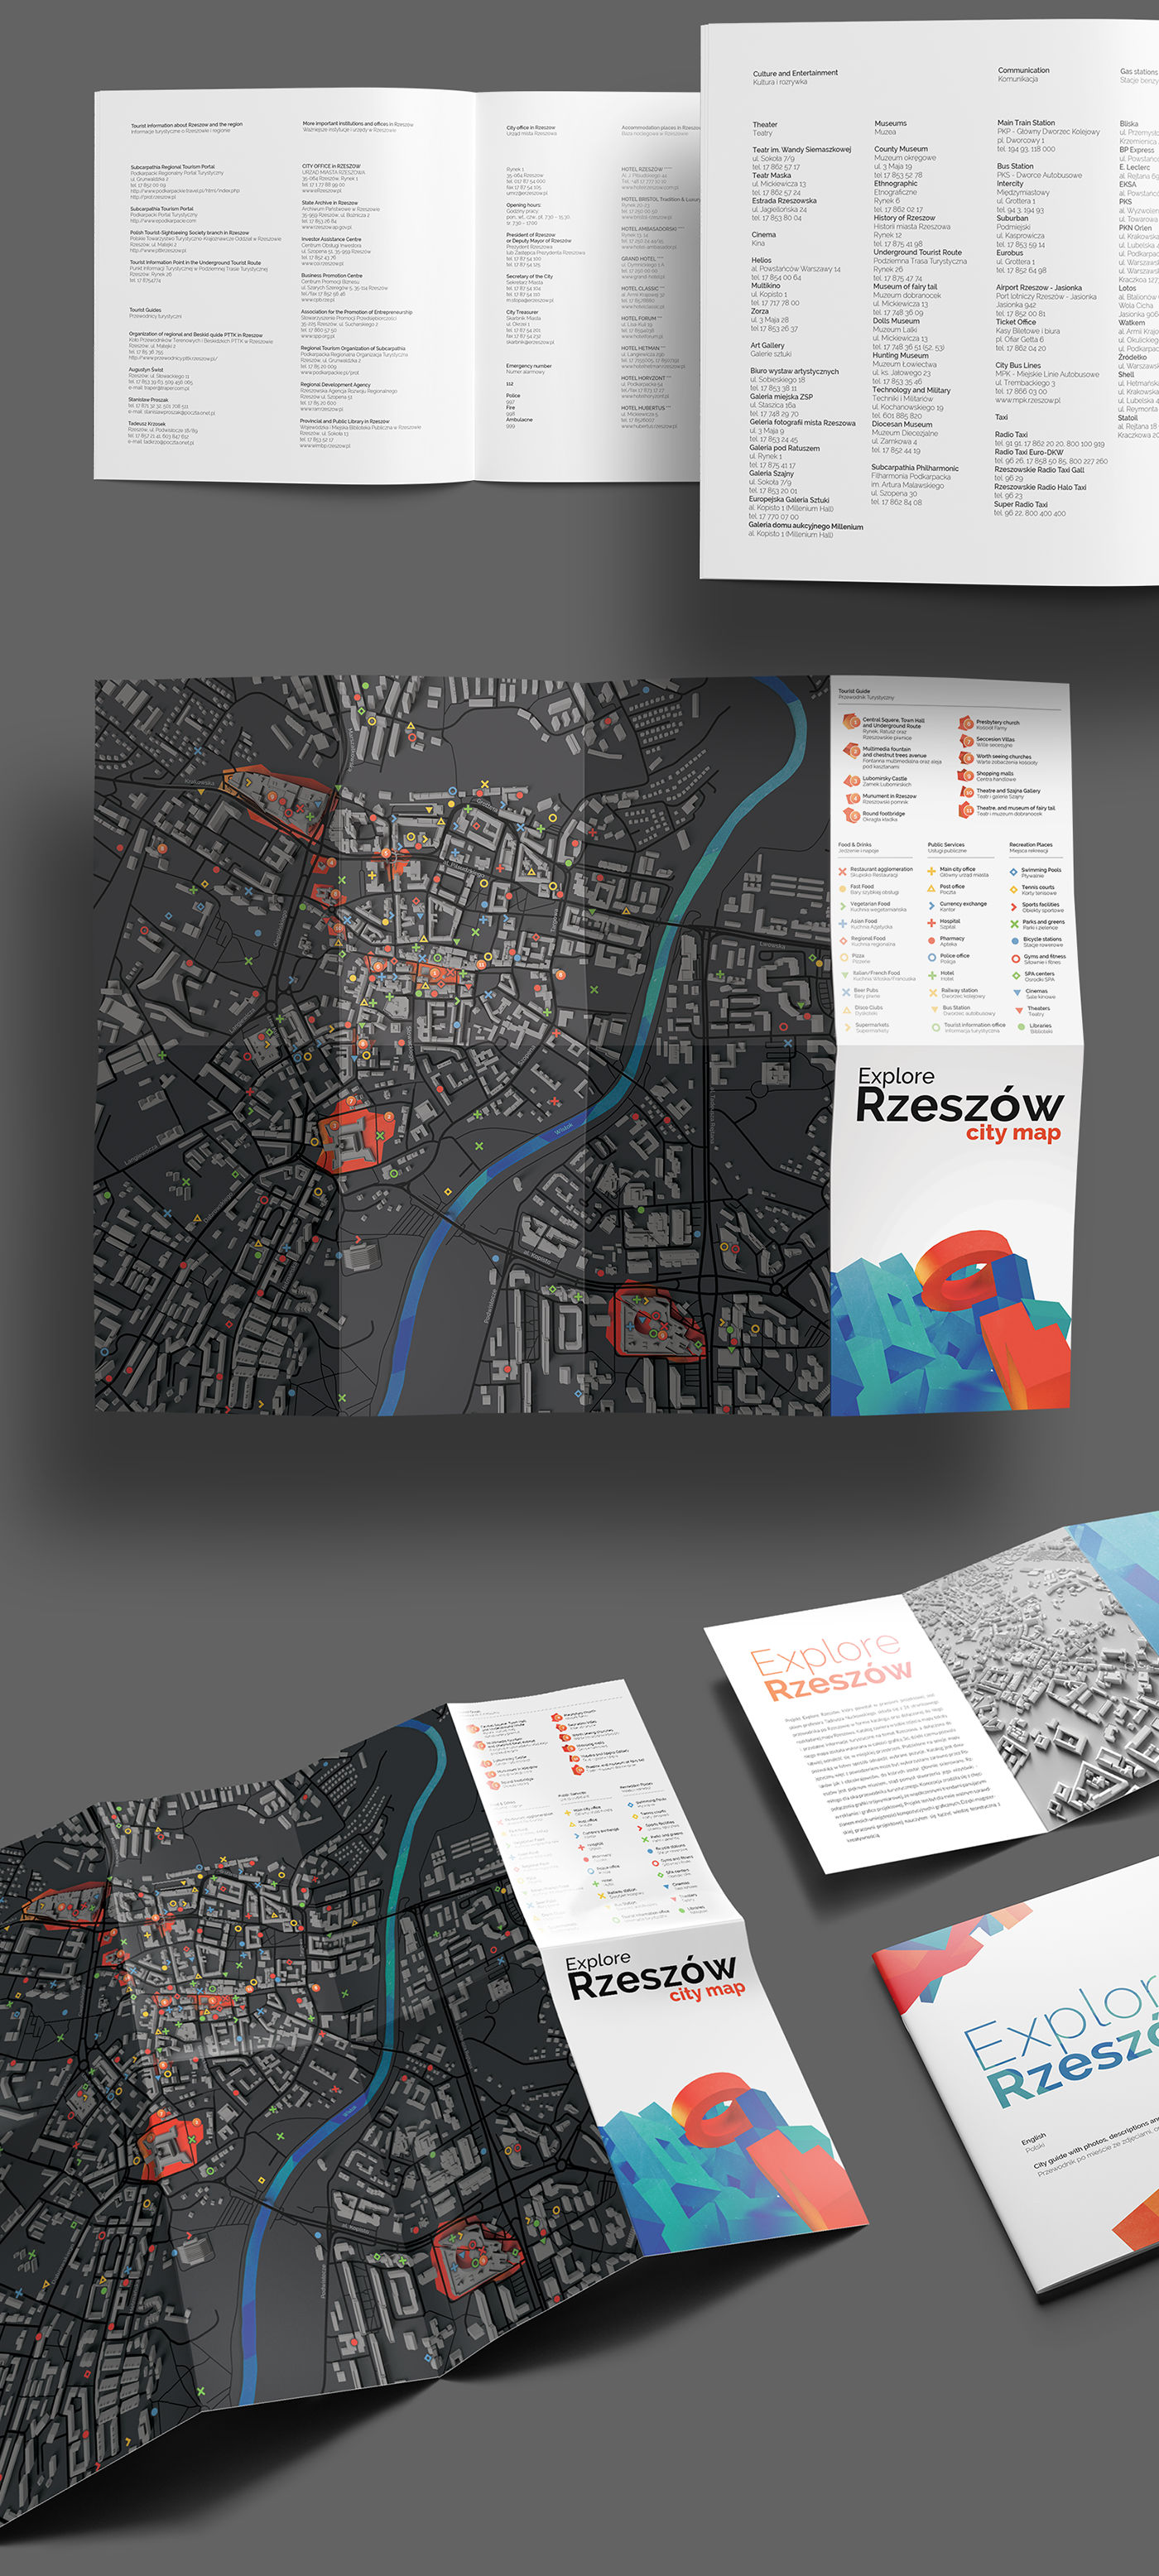 map catalog Guide tourist city rzeszow foldout minimal explore explore rzeszow print folder